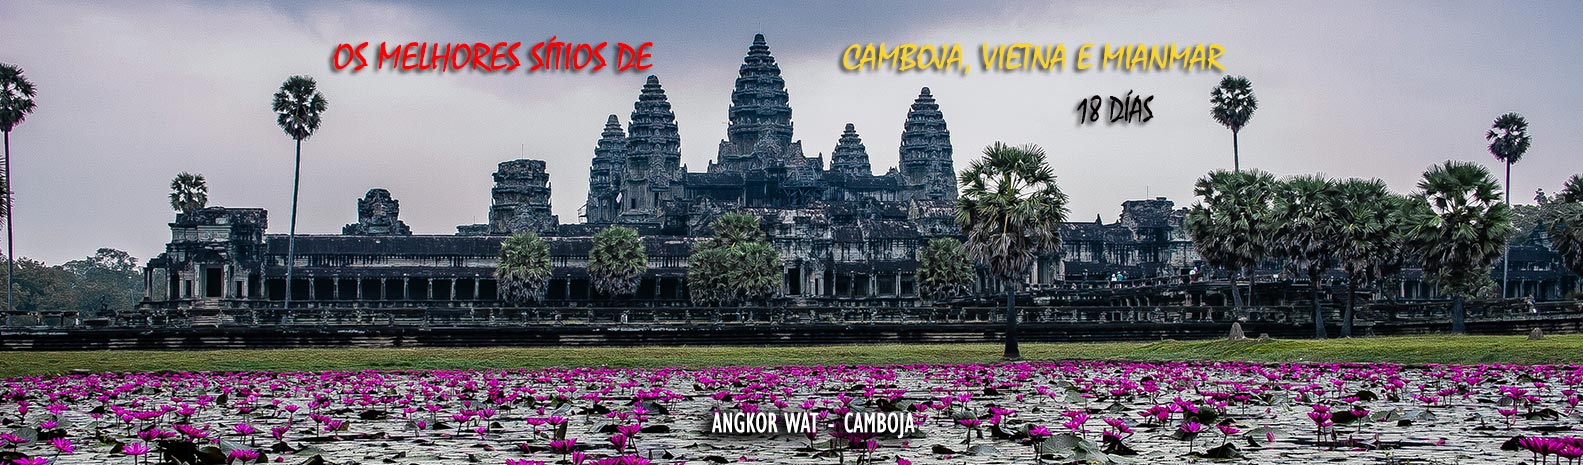 Viagem vietna, Camboja e Mianmar